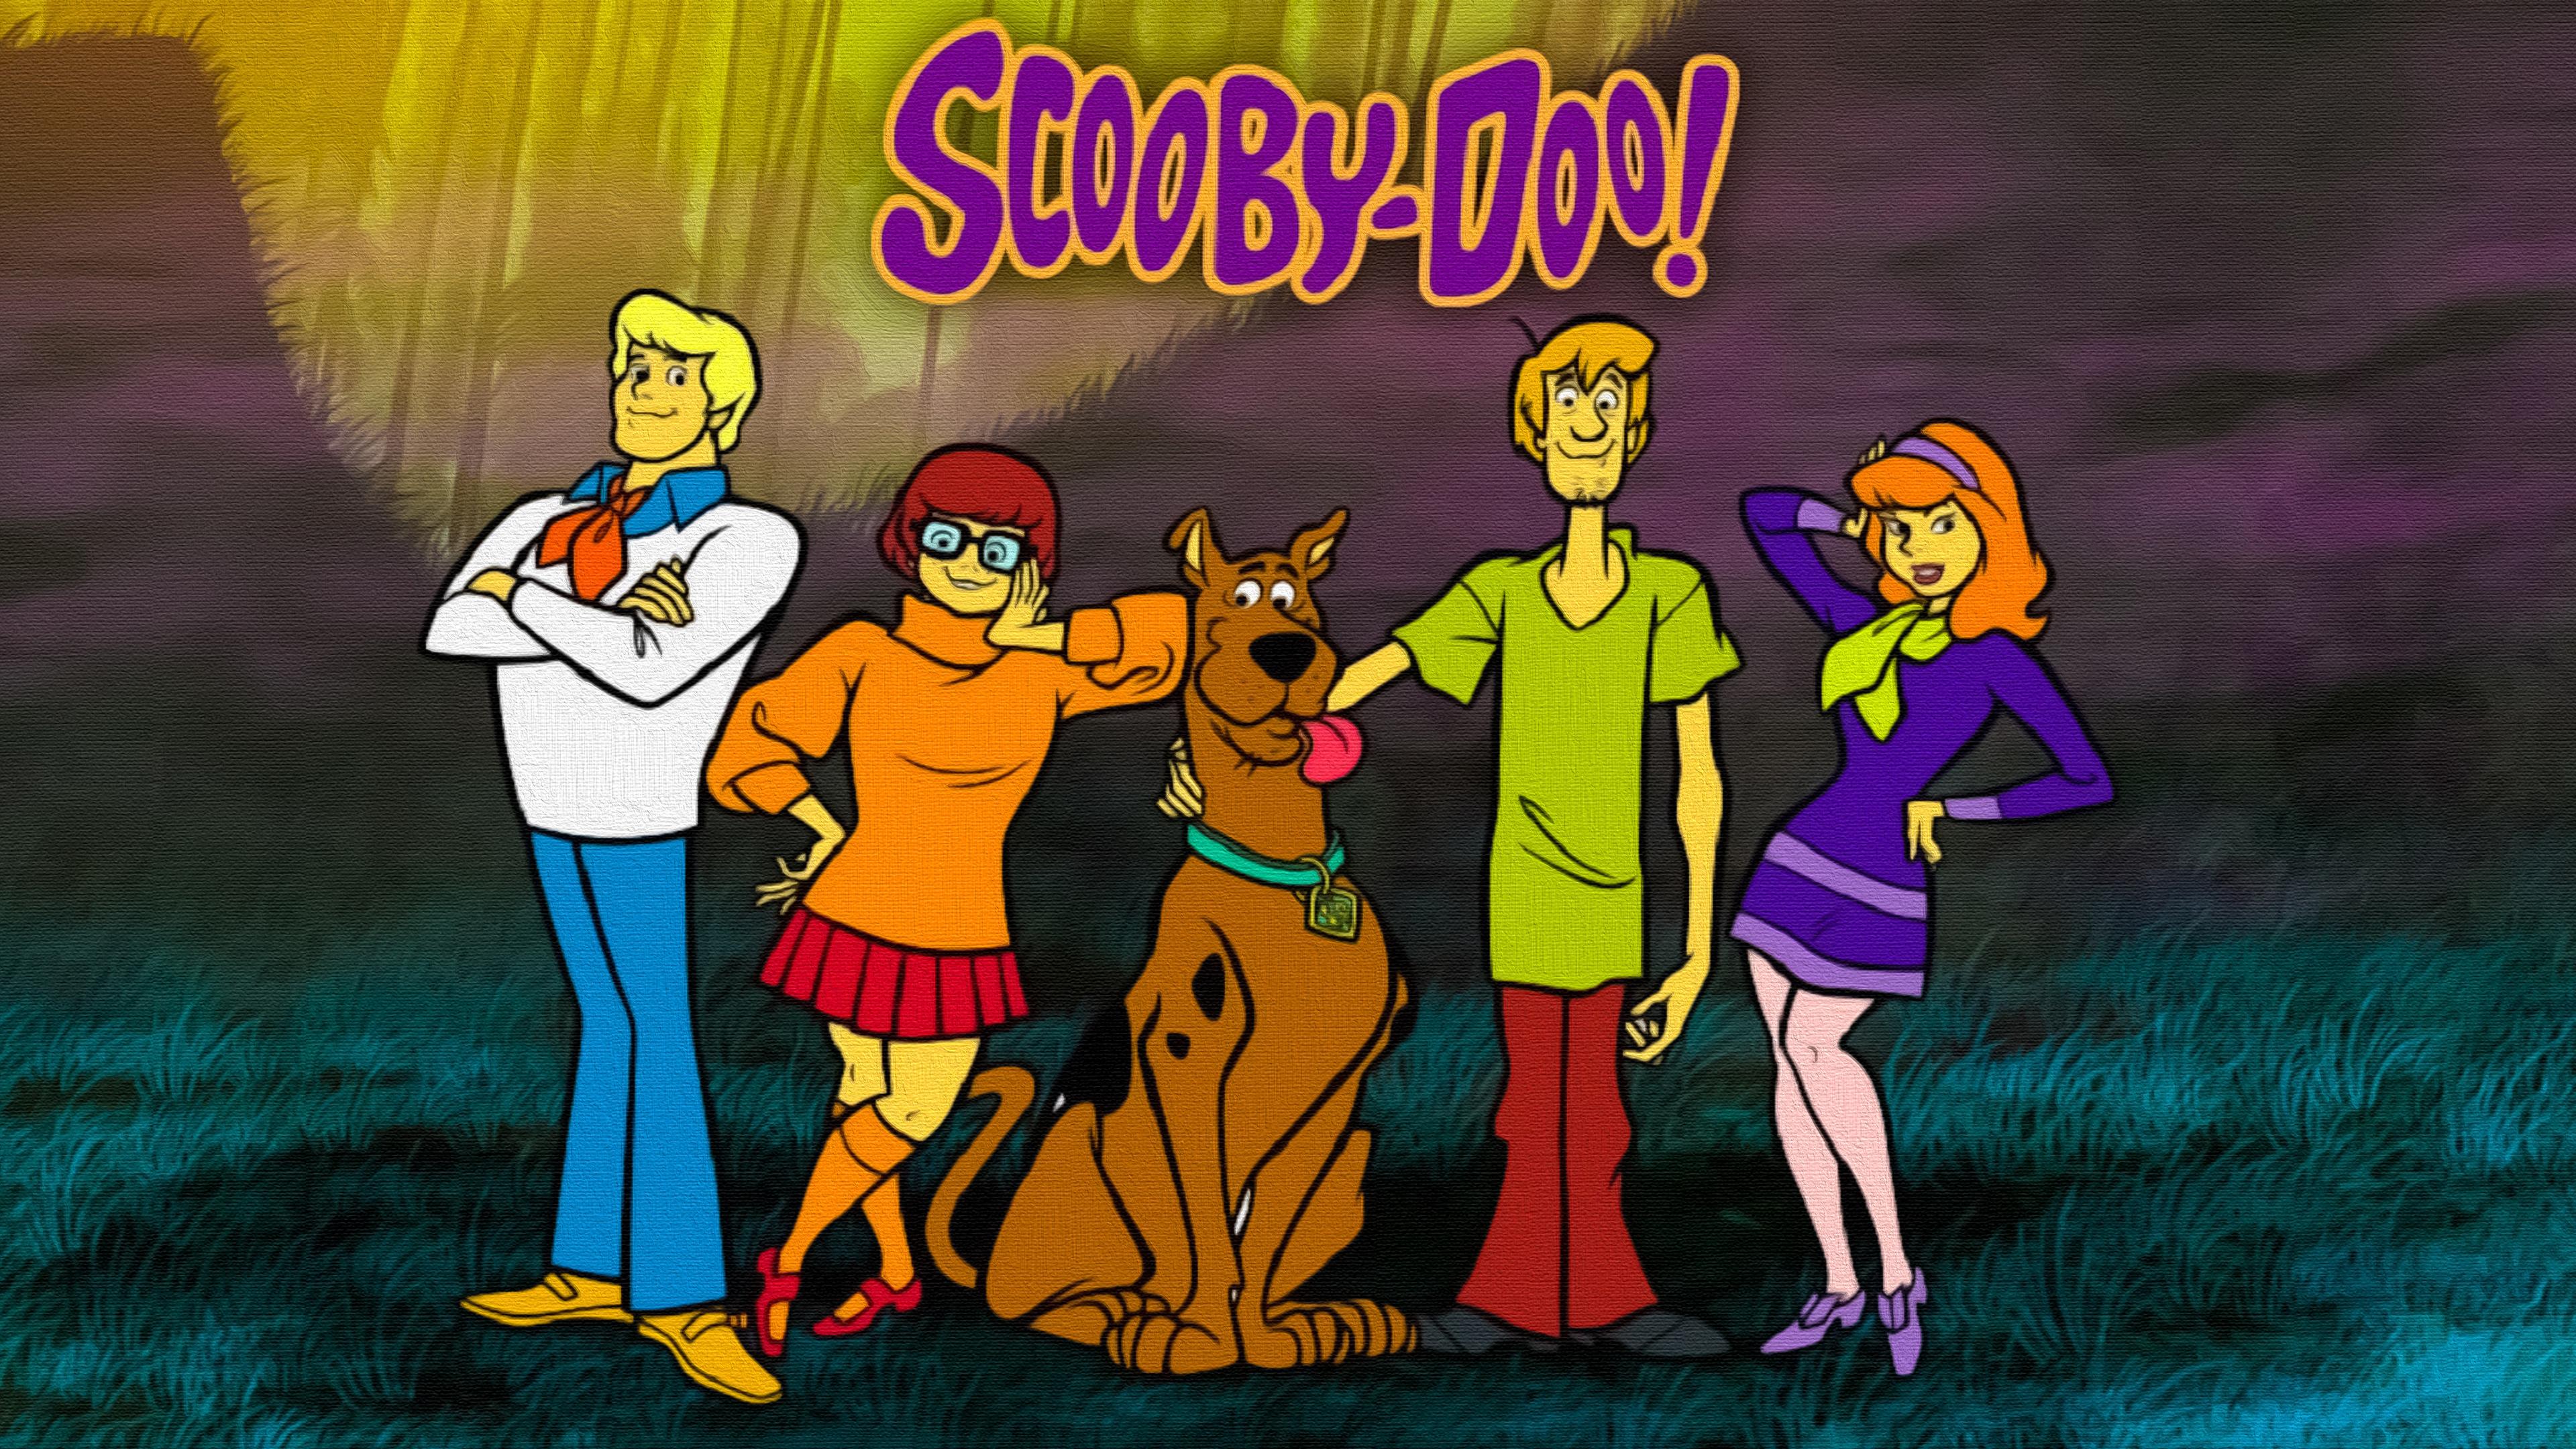 Scooby Doo Wallpaper Scoobydoo Wallpapers Desktop Background | Images ...